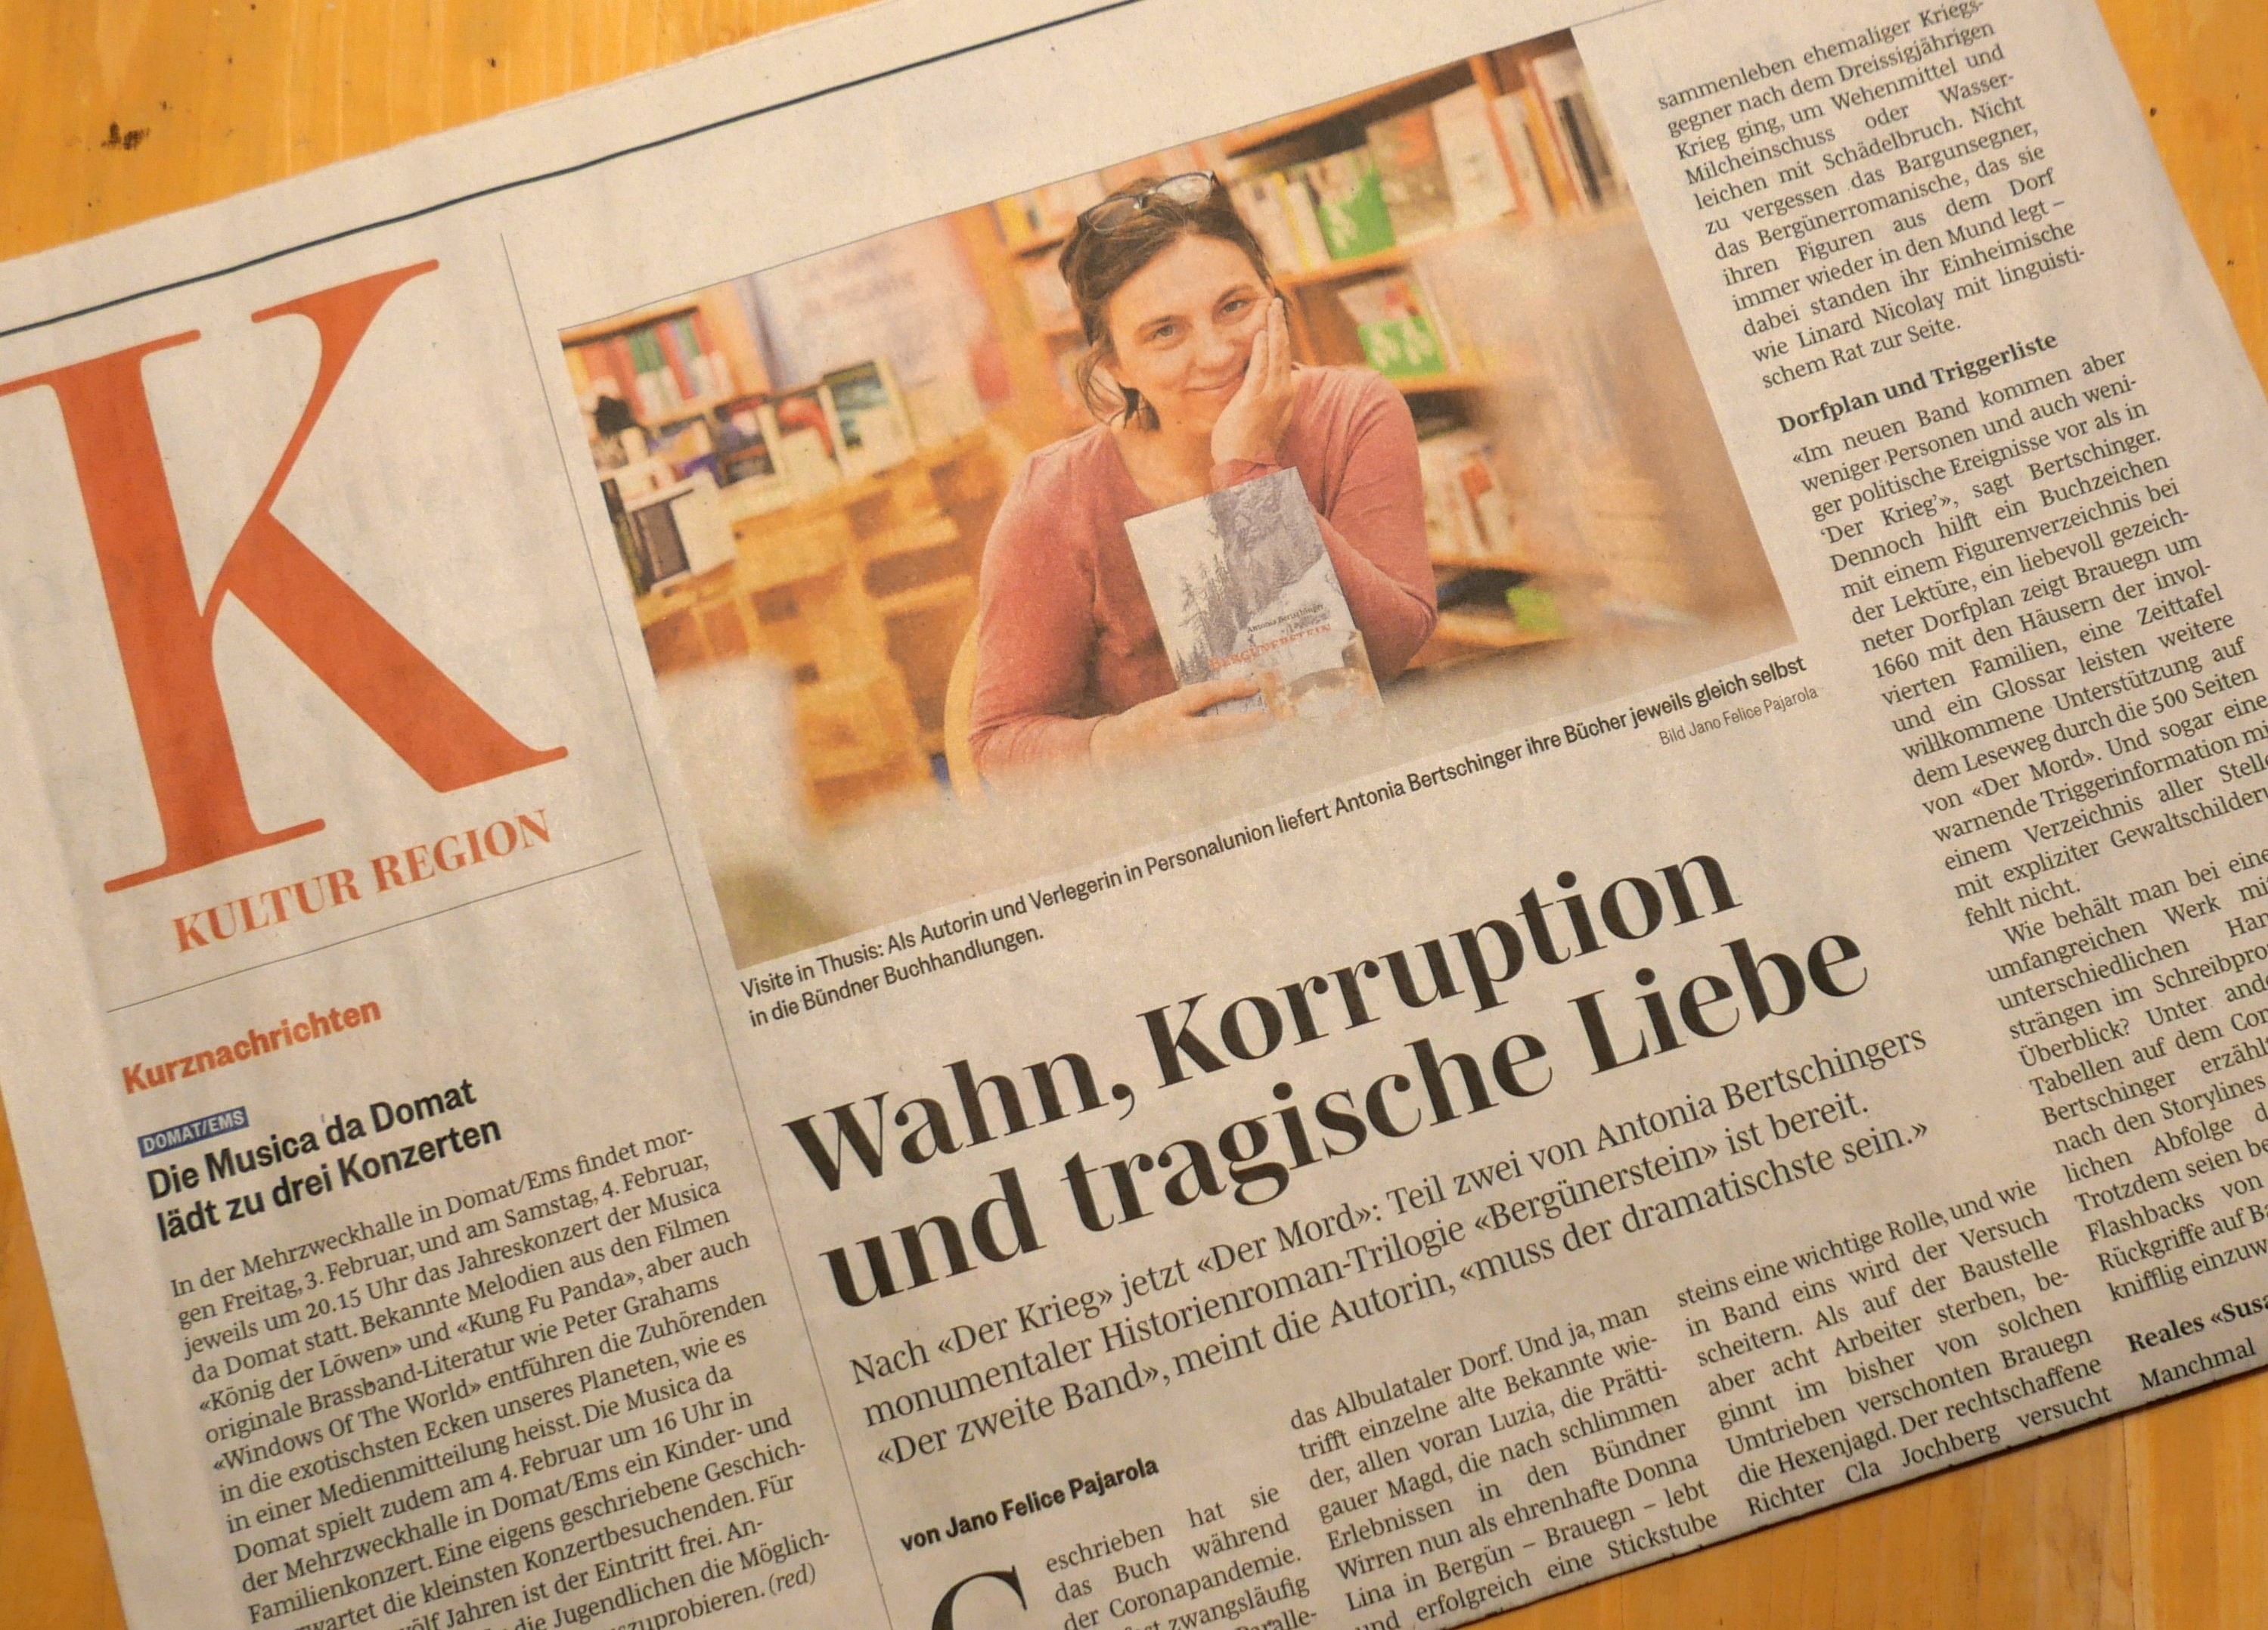 Foto einer Zeitung auf einem hellbraunen Holztisch. Oben ein Bild der Autorin, sie sitzt in einer Buchhandlung und lächelt in die Kamera. Darunter die Schlagzeile "Wahn, Korruption und tragische Liebe"